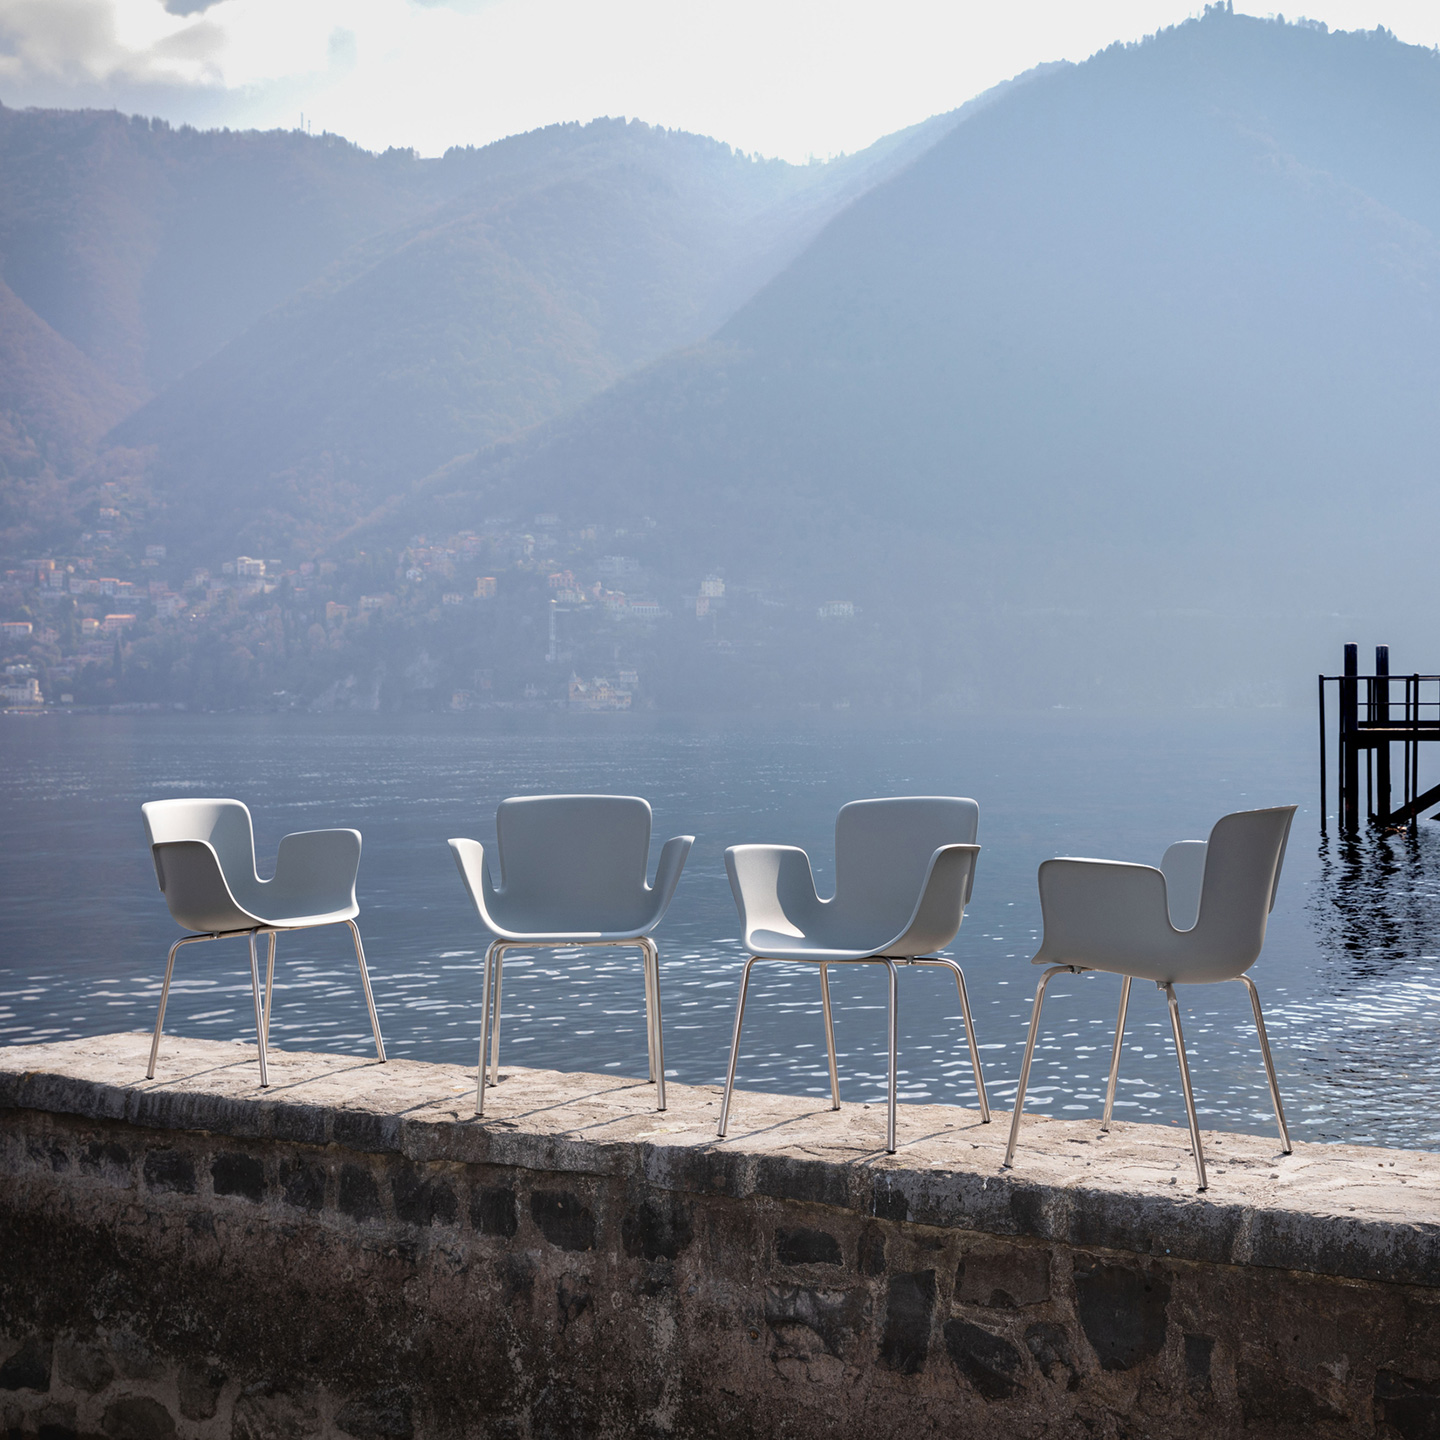 Juli Re-Plastic ist ein vierbeiniger Outdoor-Stuhl aus Edelstahl, dessen Schale aus recyceltem und wiederverwertbarem, glasfaserverstärktem Polypropylen besteht.